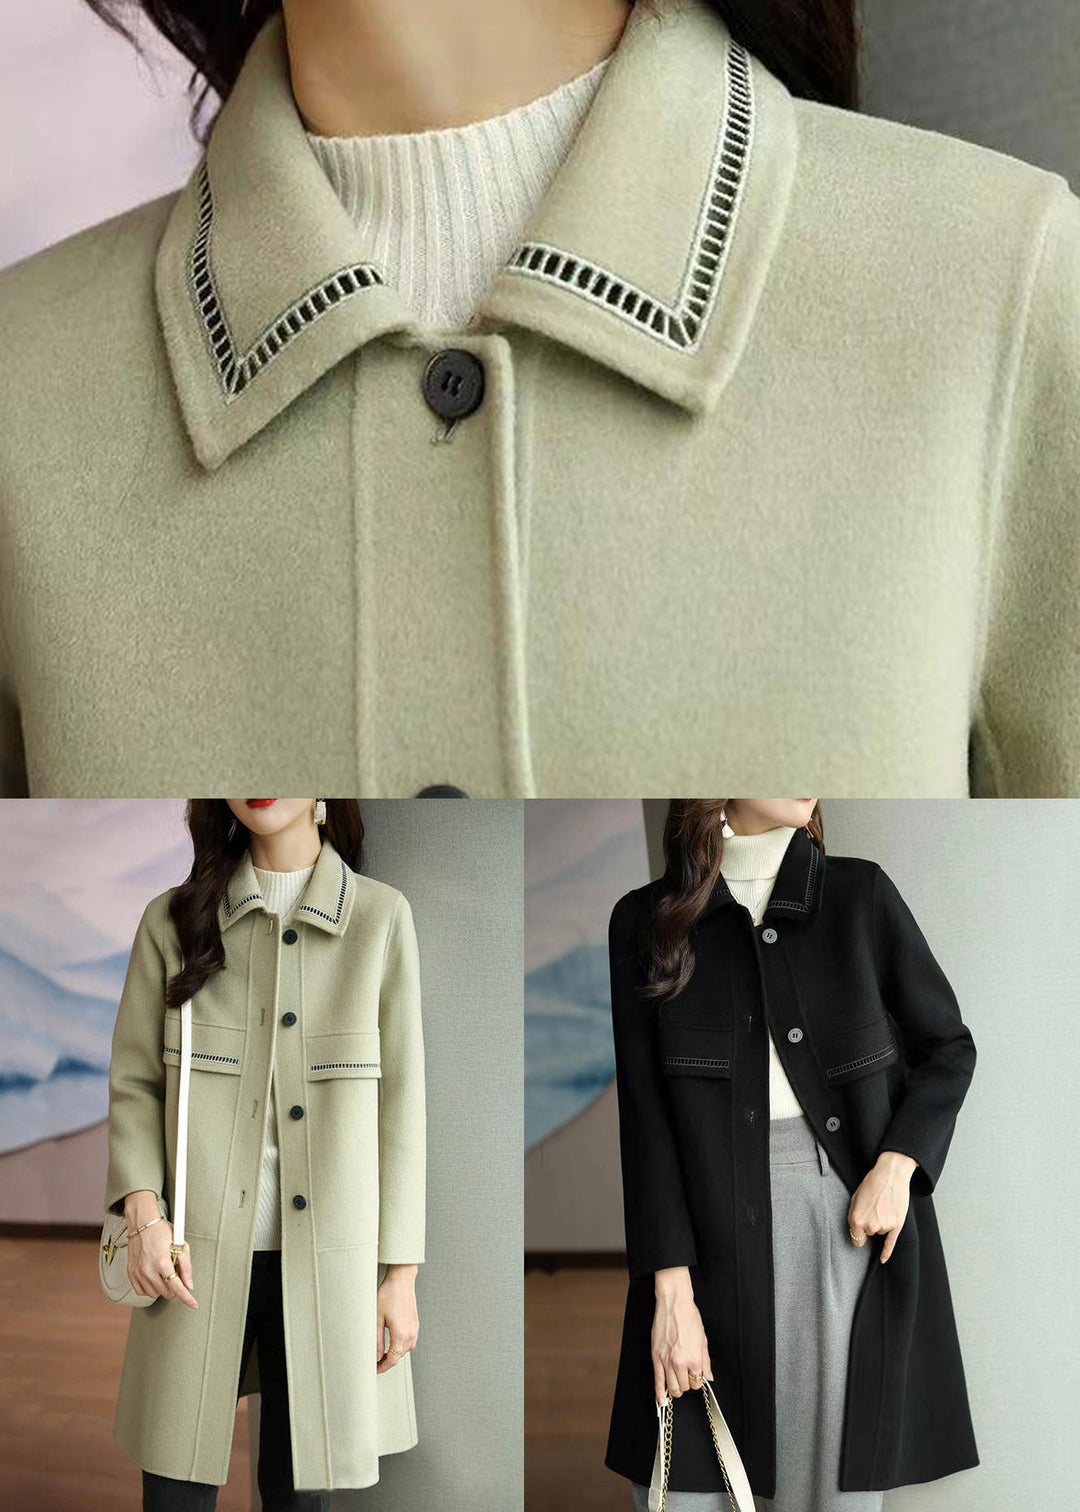 Black Pockets Patchwork Woolen Coats Peter Pan Collar Long Sleeve